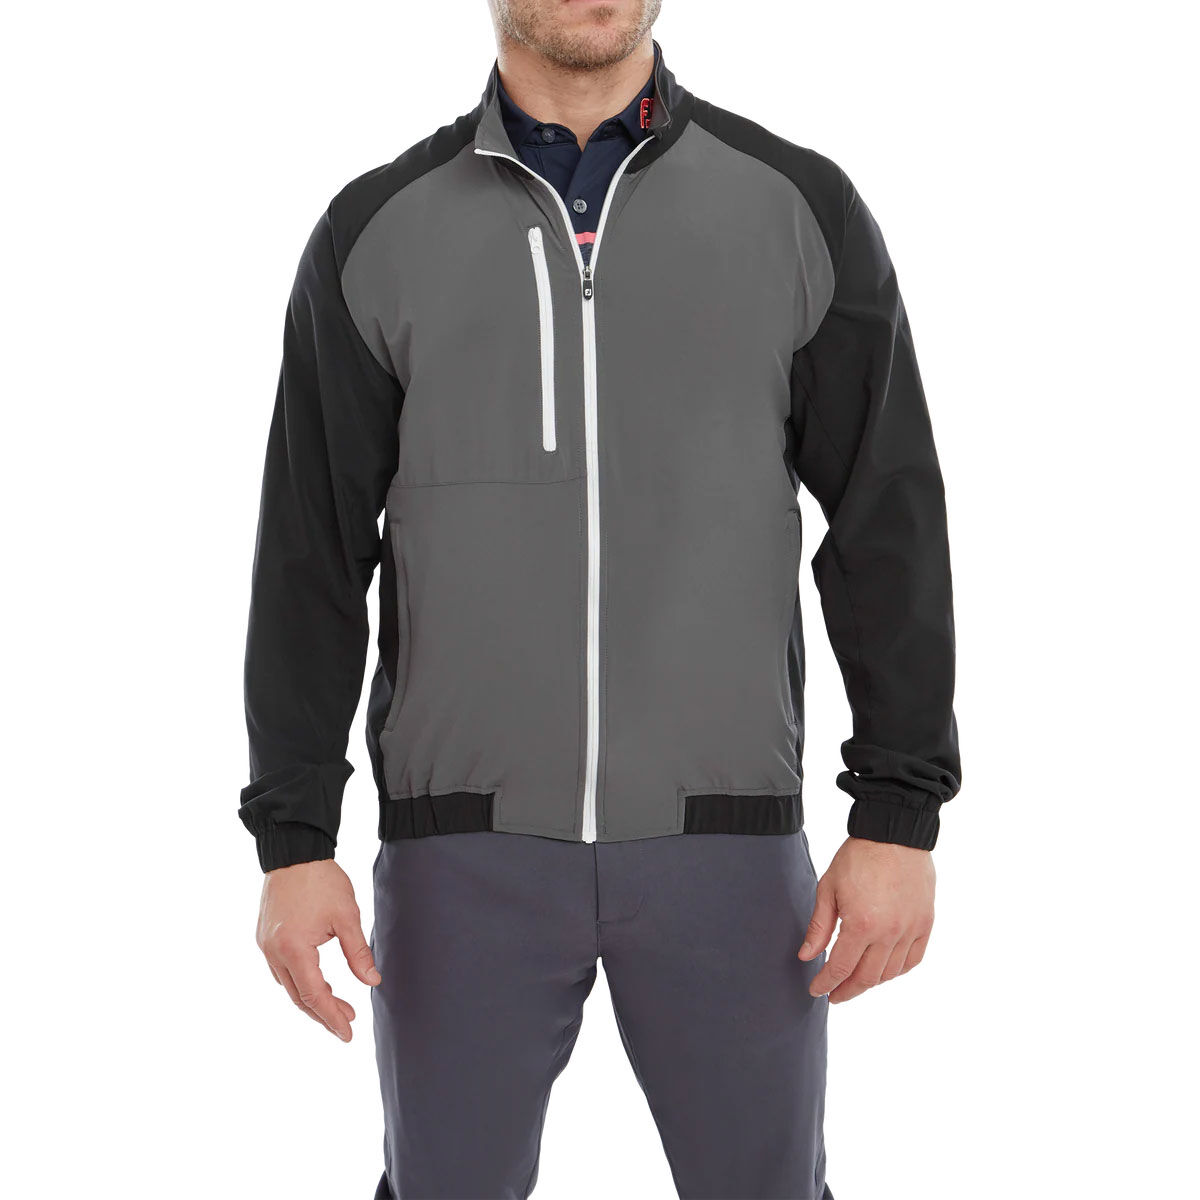 FootJoy Men’s Elements Packable Waterproof Golf Jacket, Mens, Black/charcoal/white, Medium | American Golf